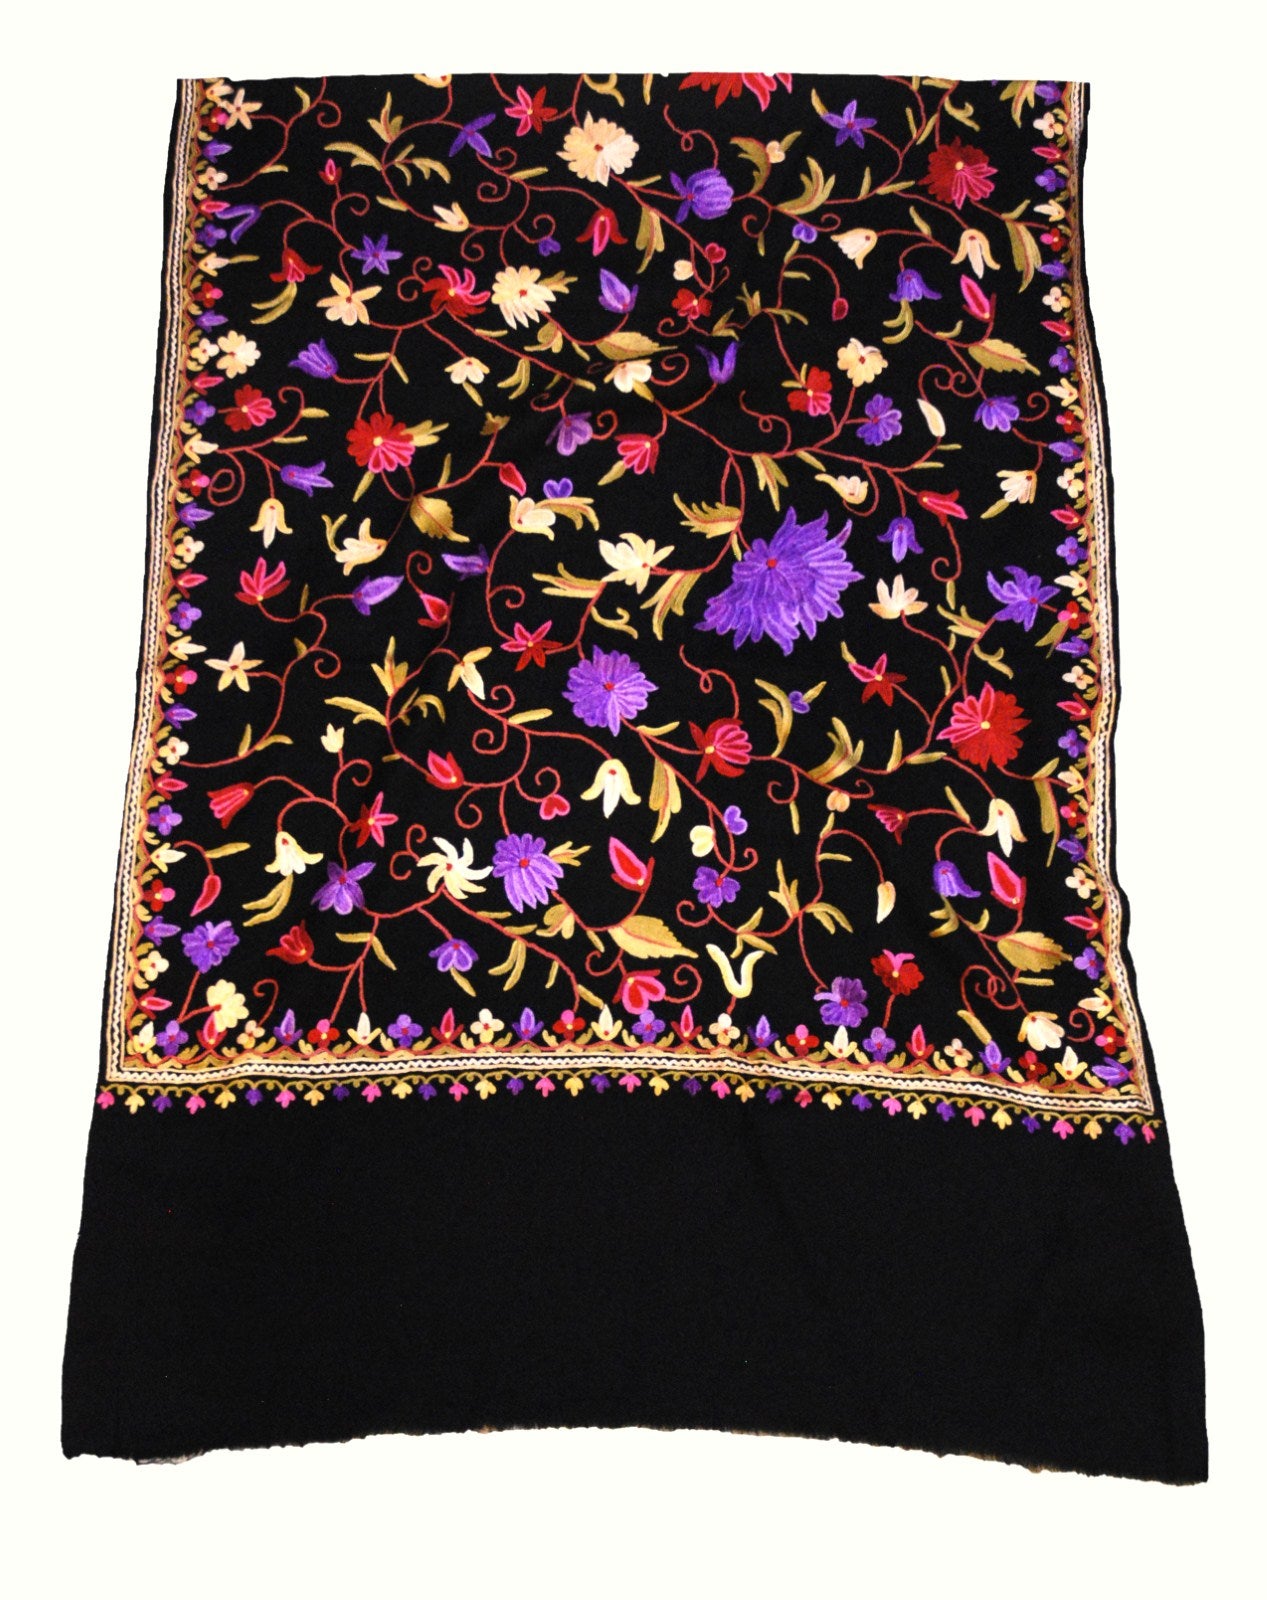 Kashmir Wool Shawl Wrap Throw Black, Multicolor Embroidery #WS-123